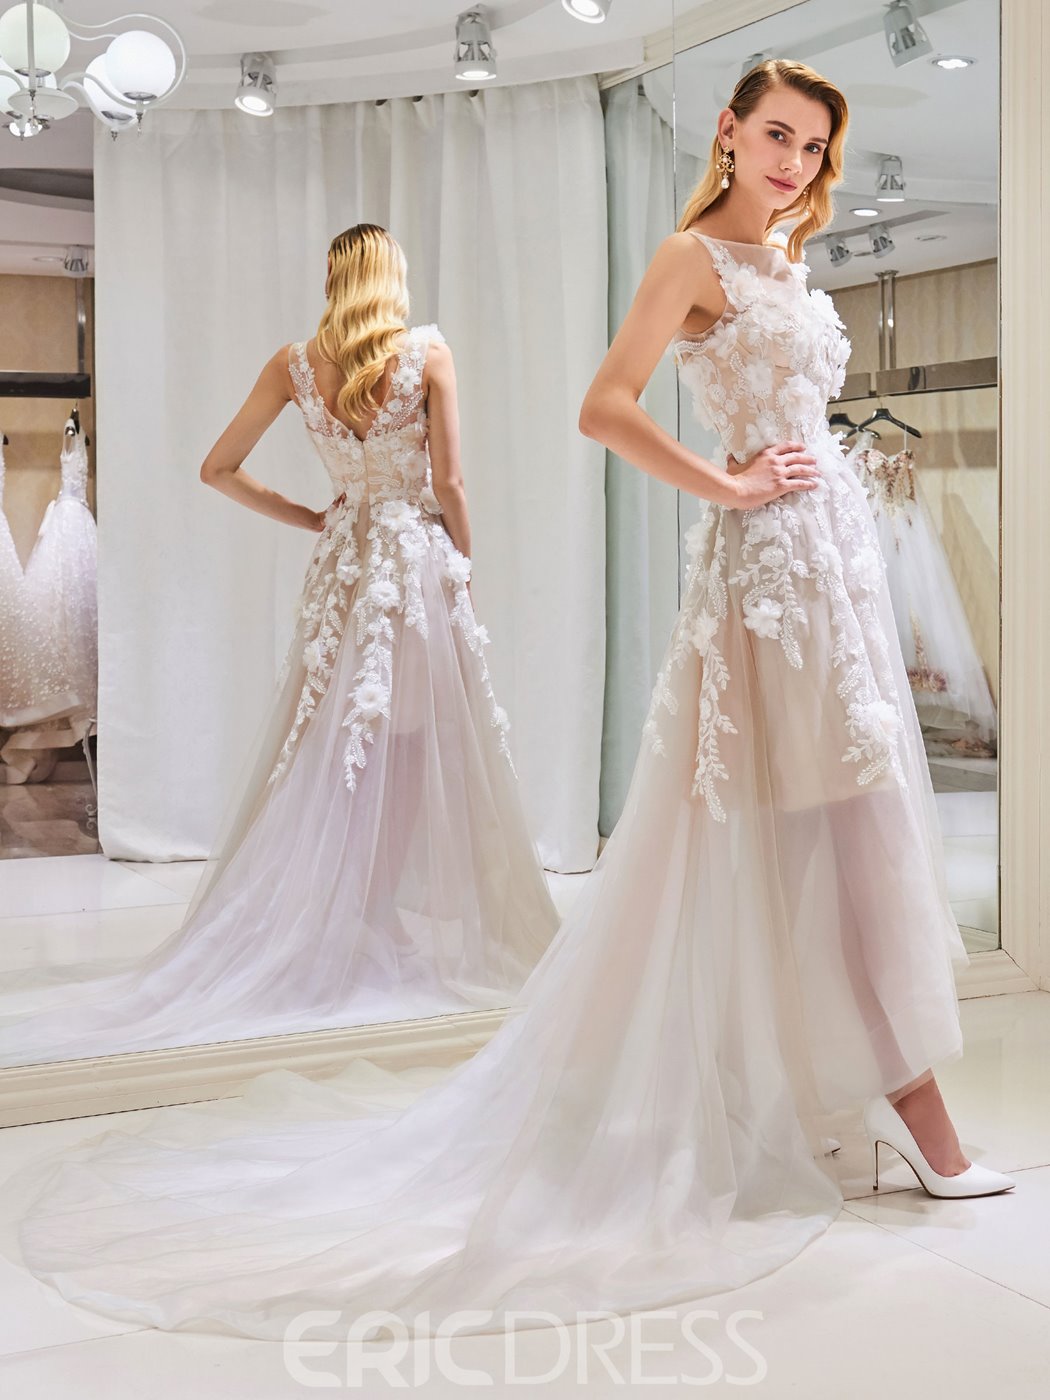 3D floral wedding dress